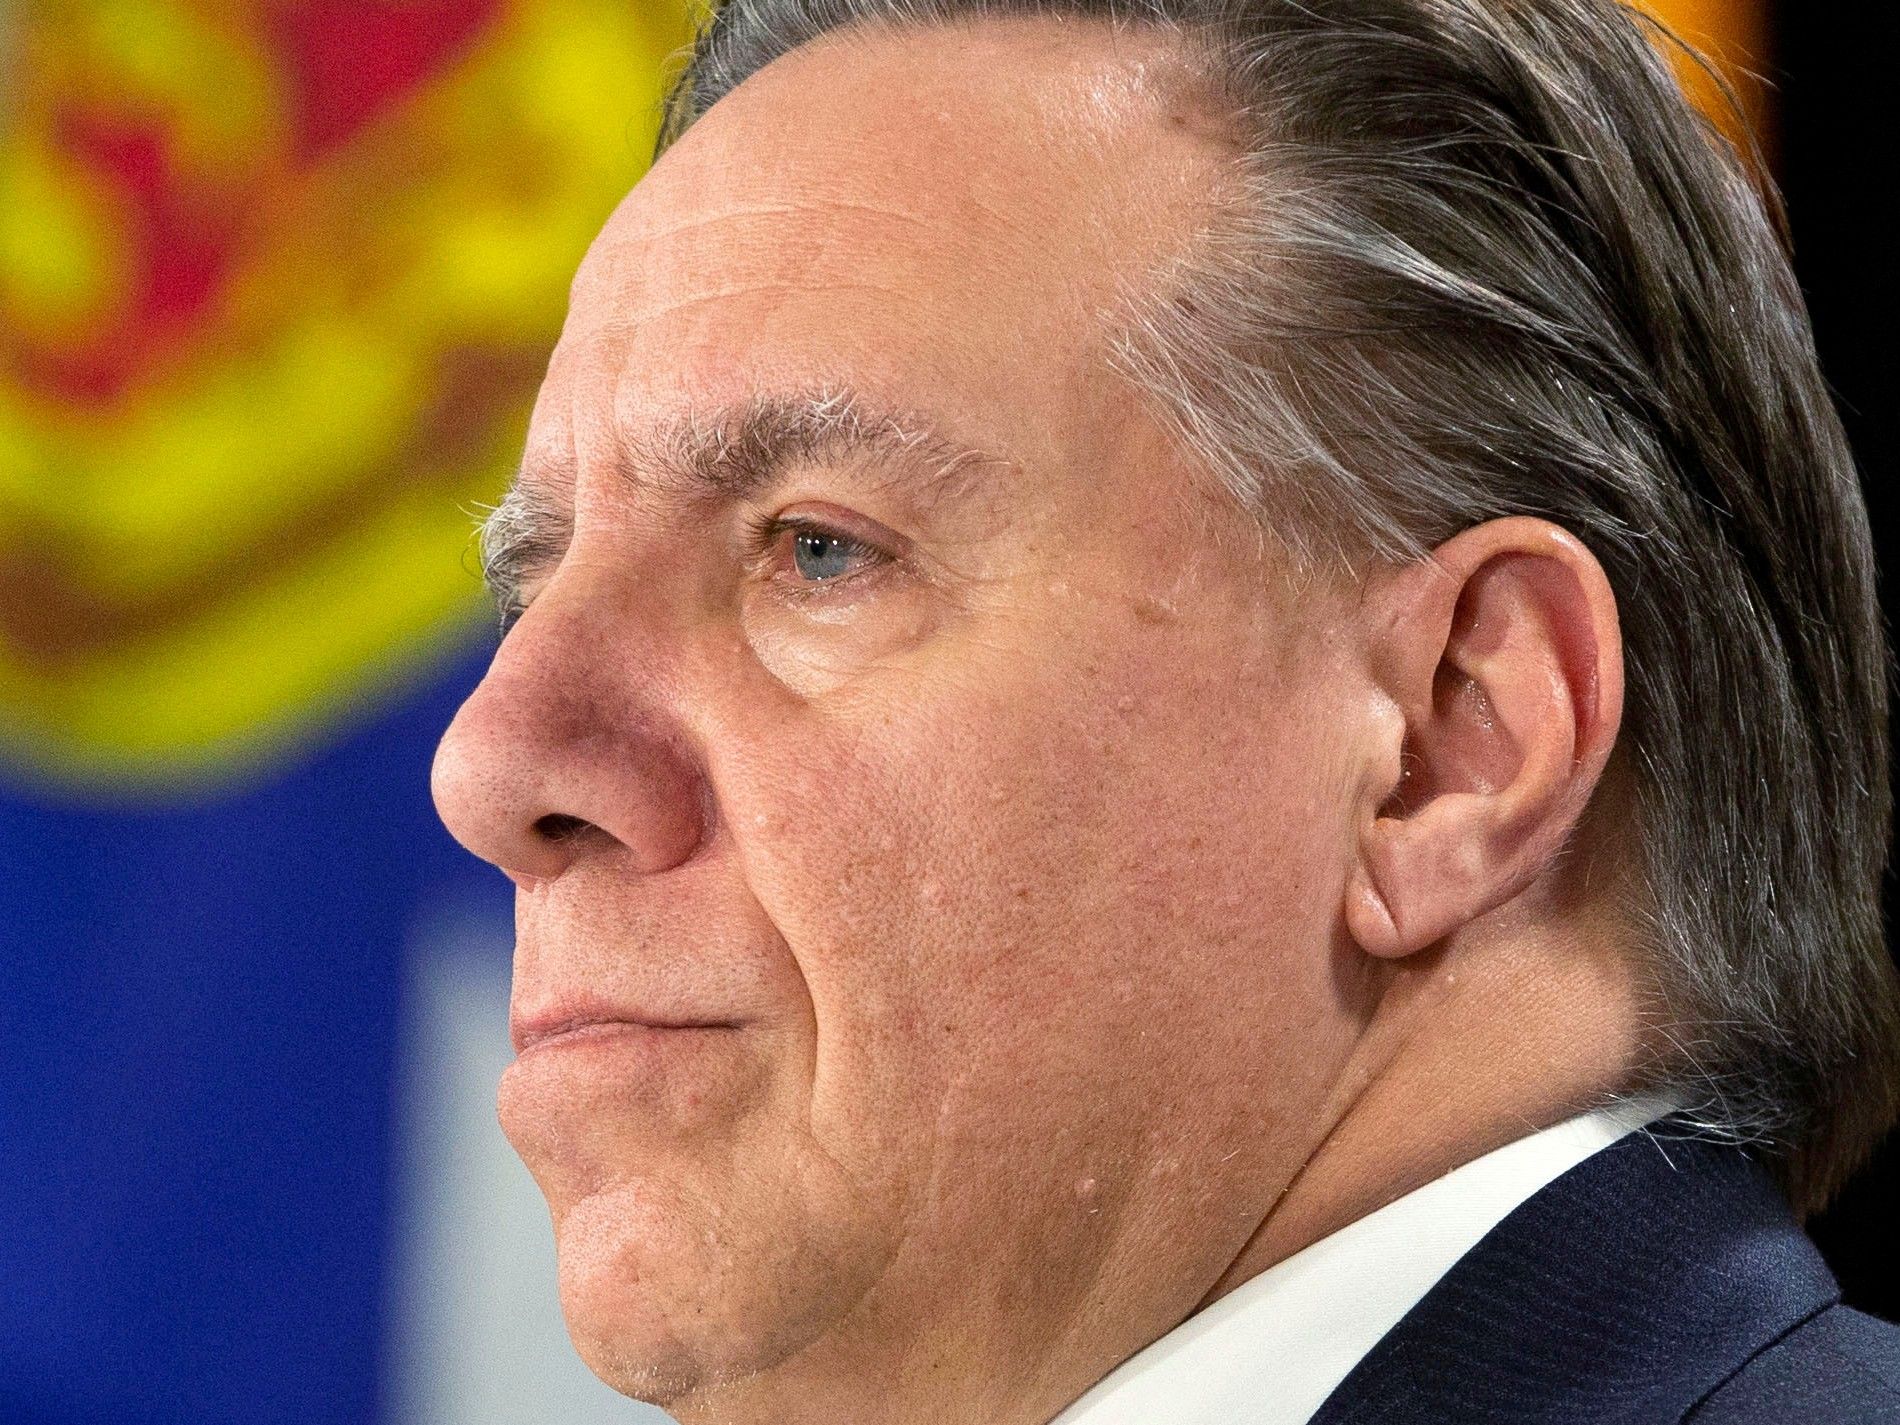 Quebec Premier Francois Legault file photo. REUTERS/Carlos Osorio